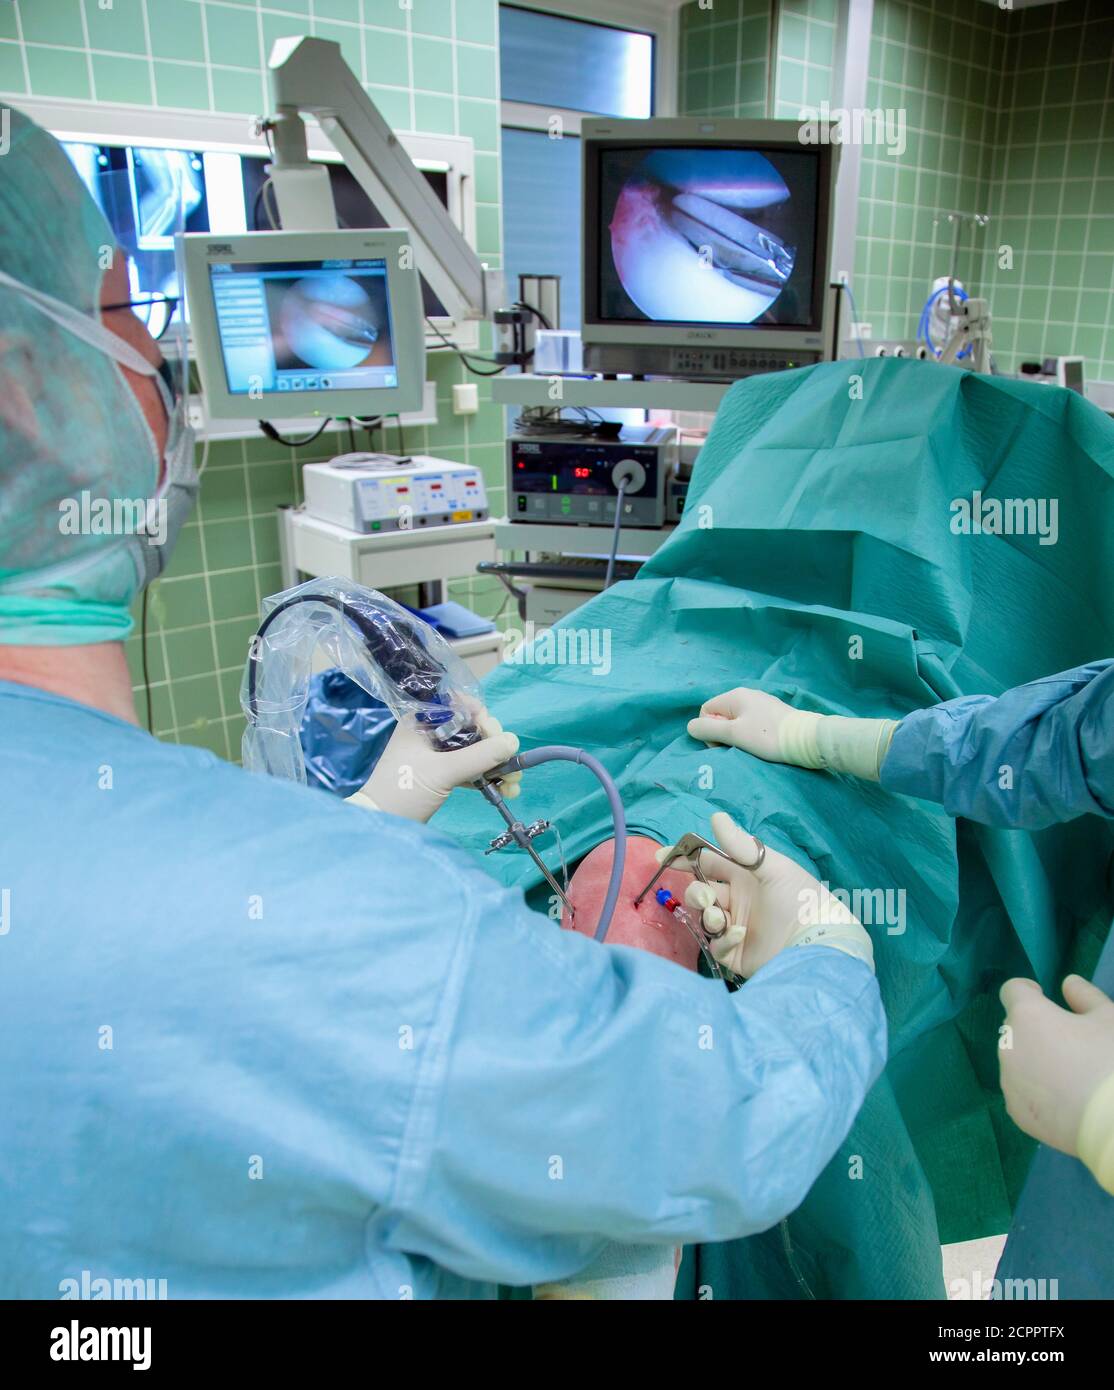 Essen, Nord Reno-Westfalia, Germania - Ospedale. Intervento chirurgico minimamente invasivo sull'articolazione del ginocchio. Il paziente viene utilizzato senza tagli maggiori. Il Foto Stock